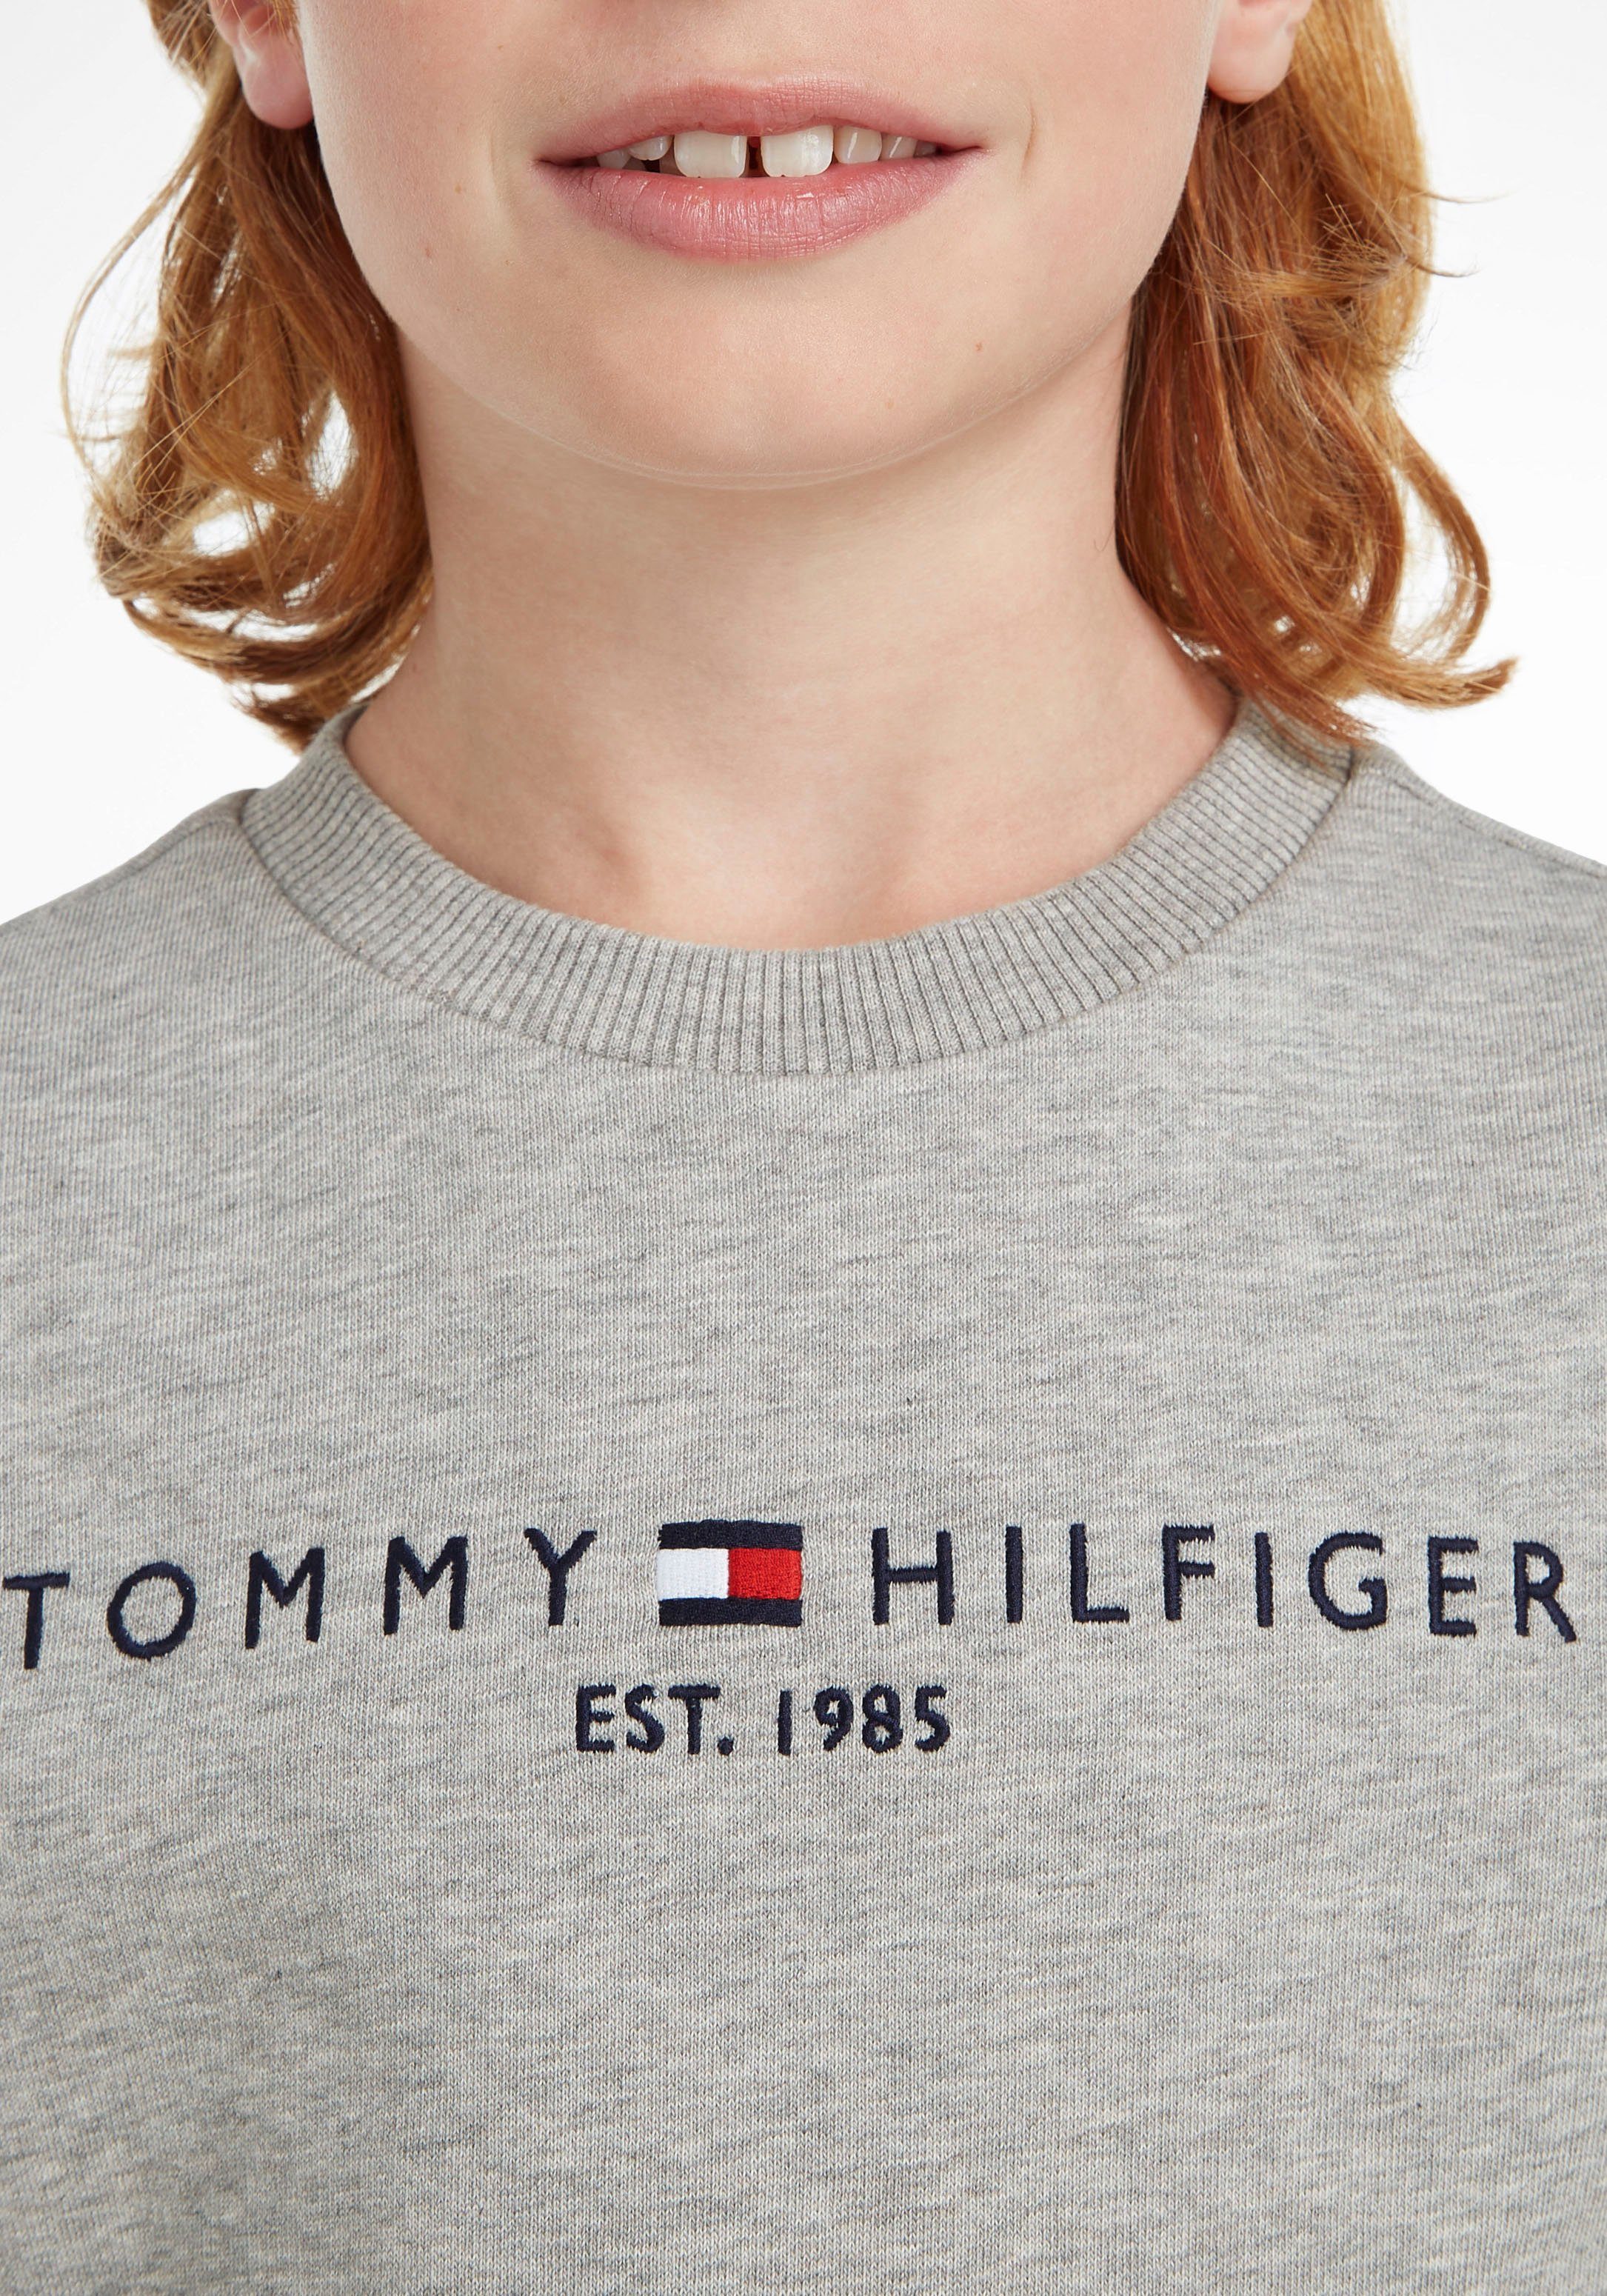 Tommy Hilfiger Sweatshirt Kinder Jungen Junior Mädchen SWEATSHIRT Kids MiniMe,für ESSENTIAL und